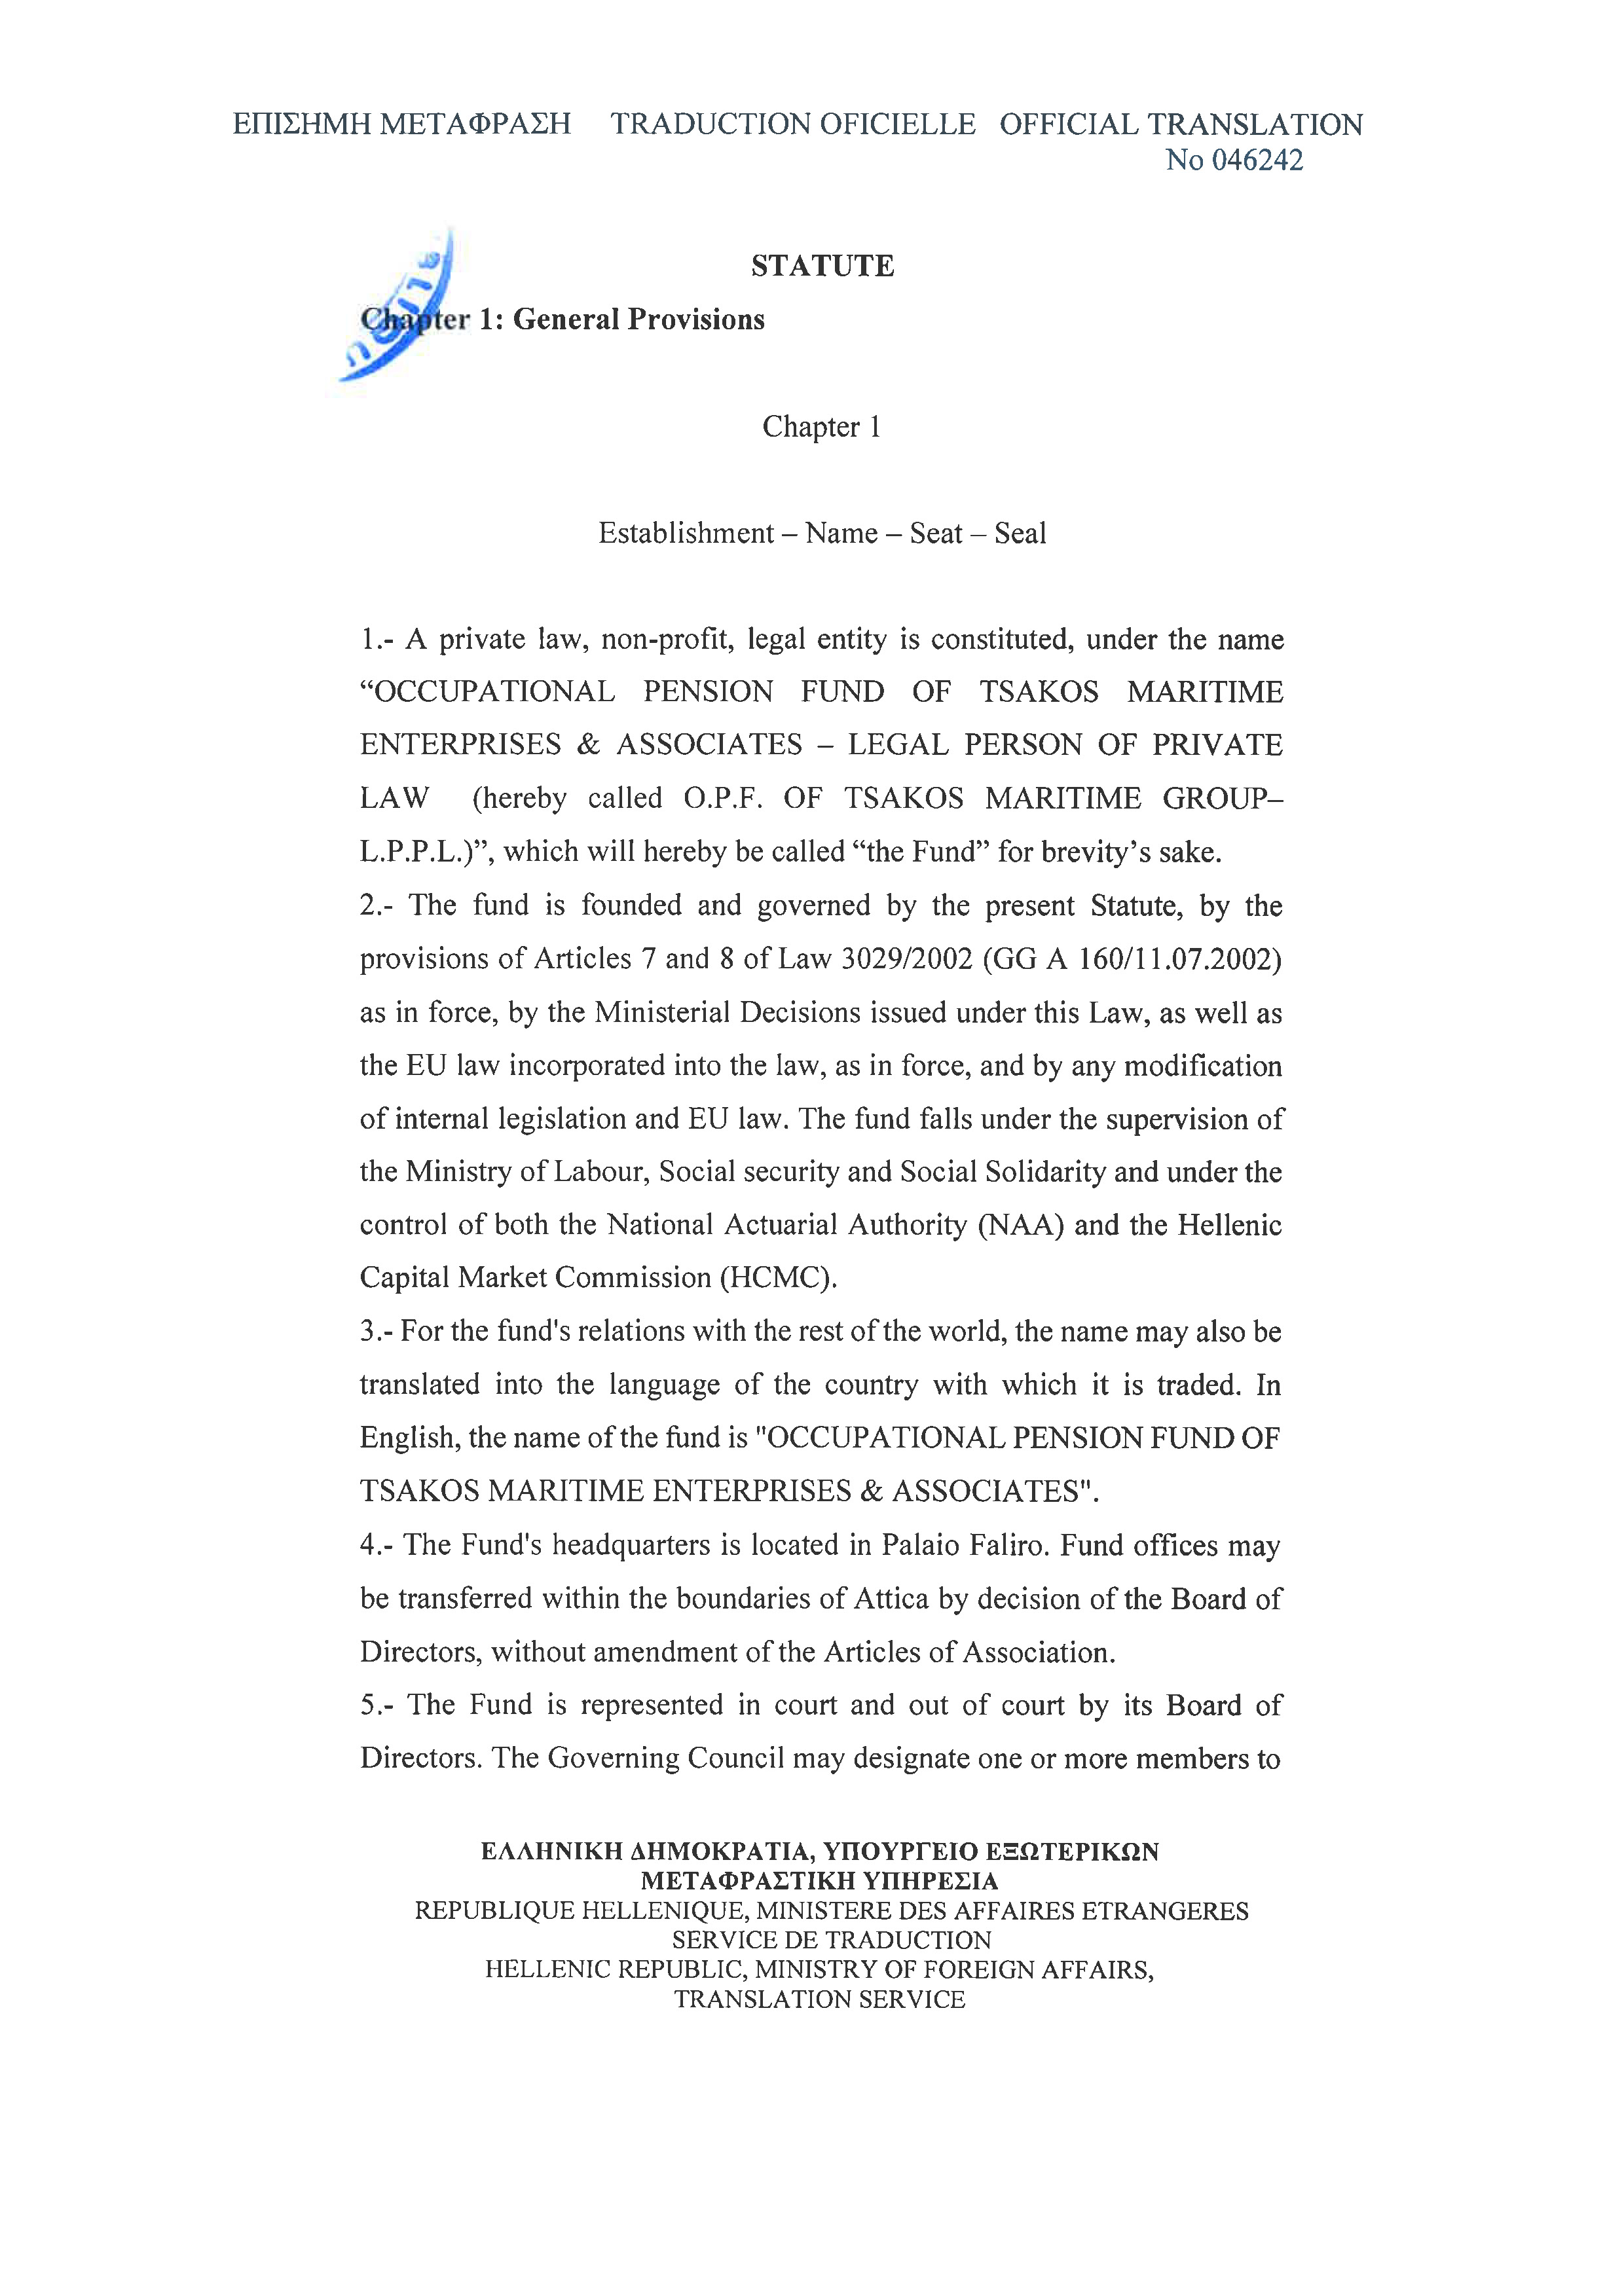 Statute OPF of TSAKOS MARITIME GROUP Page 05